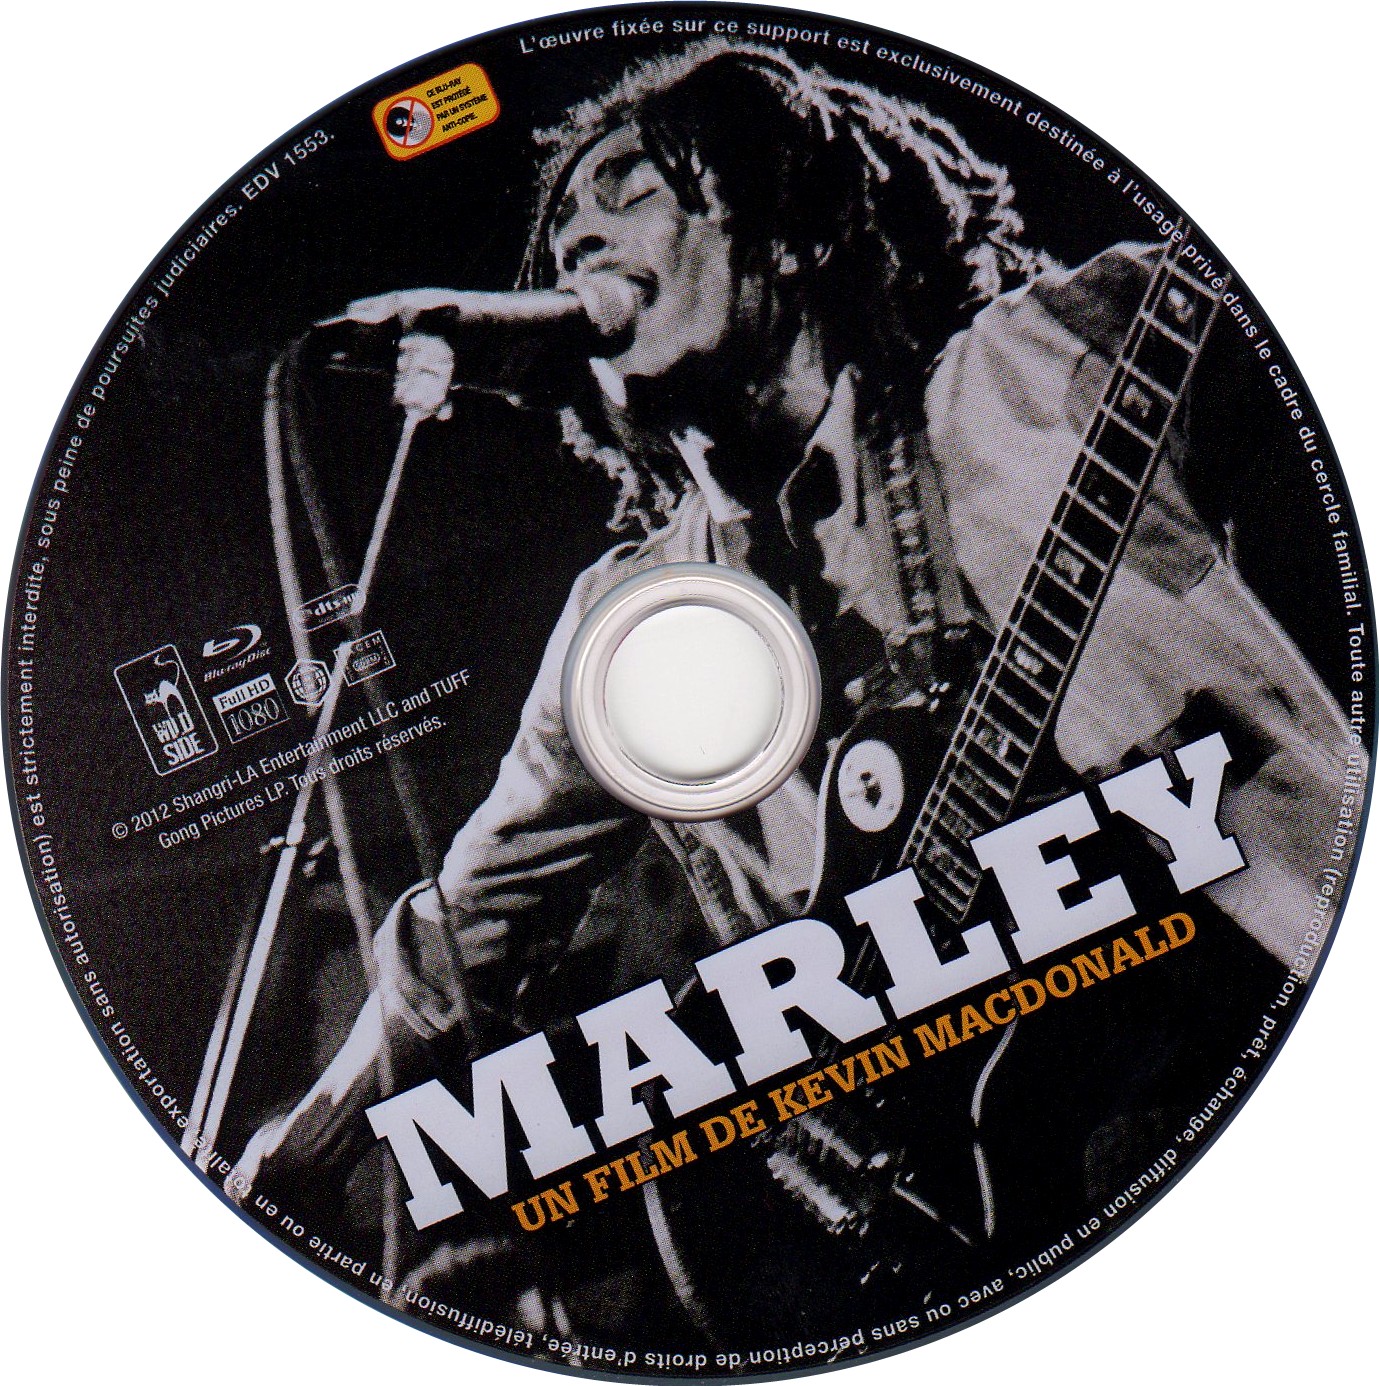 Marley (BLU-RAY)